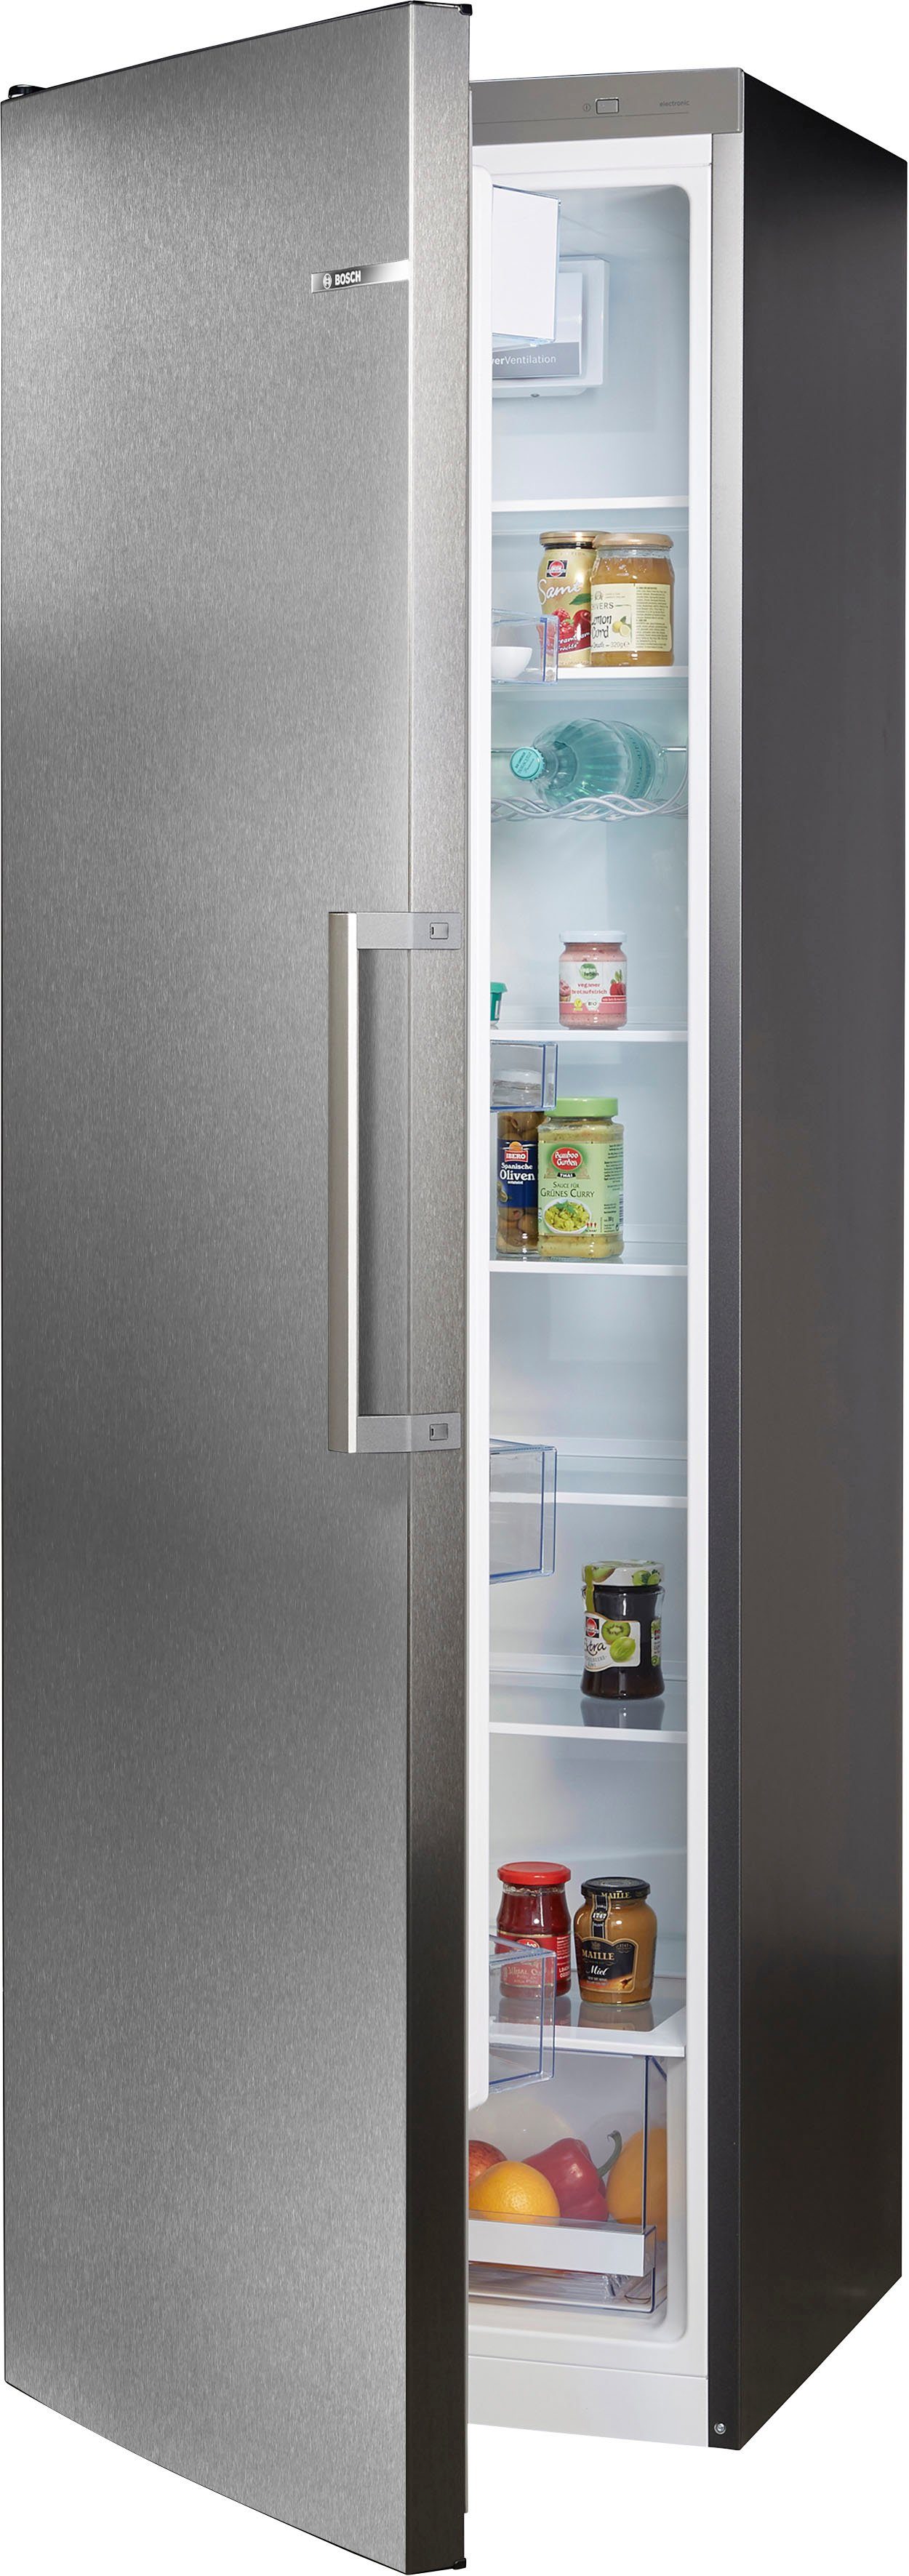 BOSCH Kühlschrank KSV36VXEP, 186 cm hoch, 60 cm breit online kaufen | OTTO